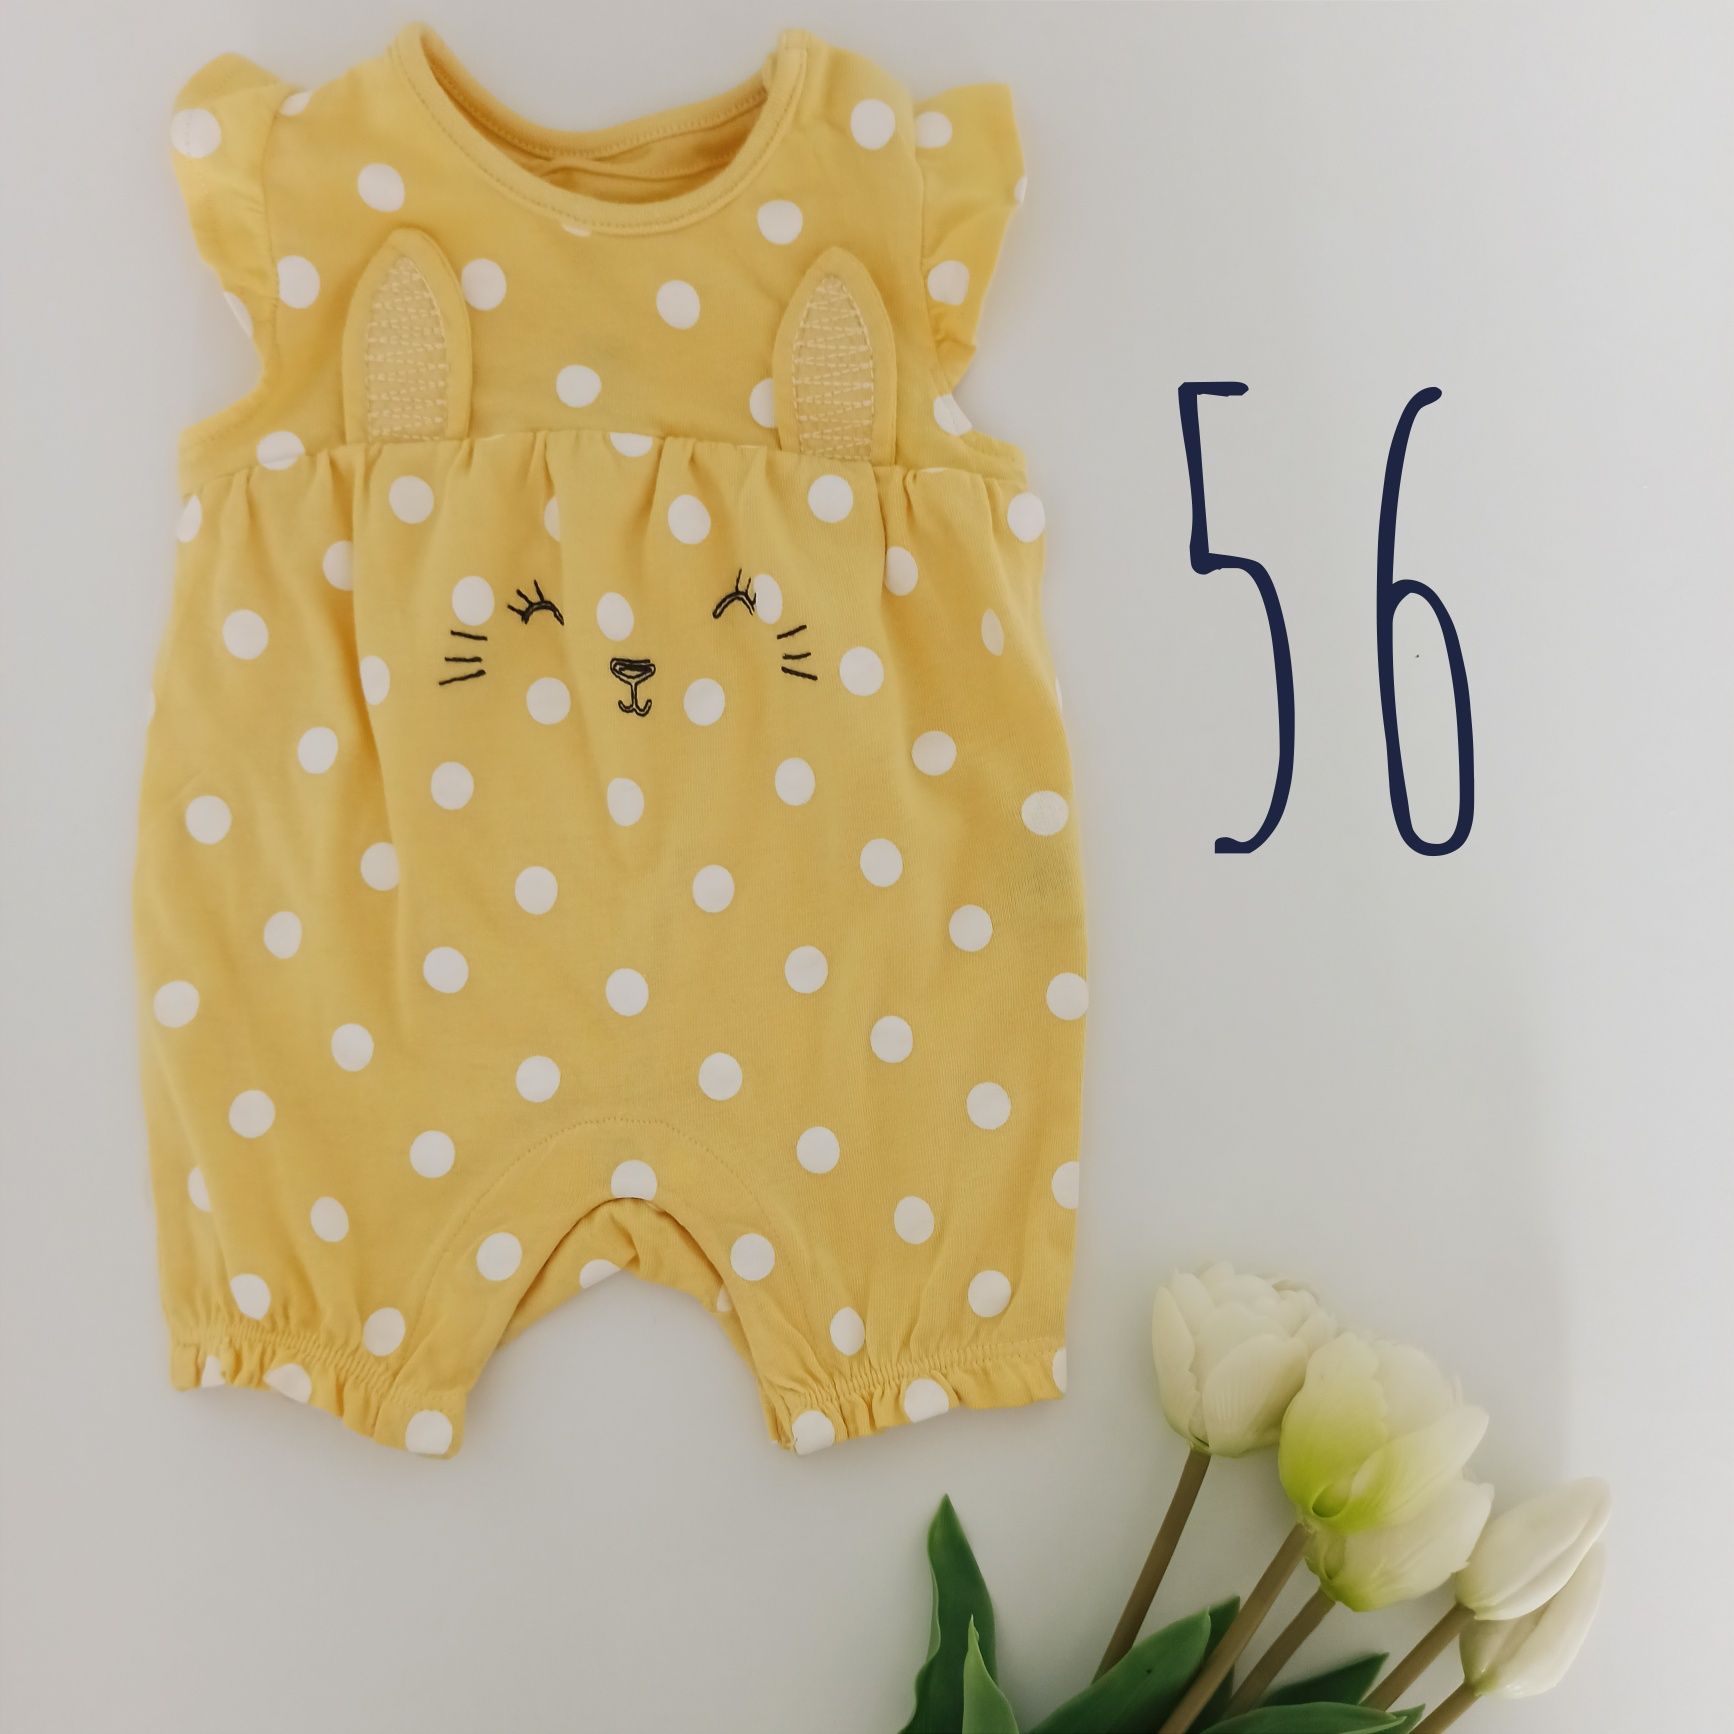 Nowy bawełniany niemowlęcy rampers 56 newborn F&F żółty w białe grochy